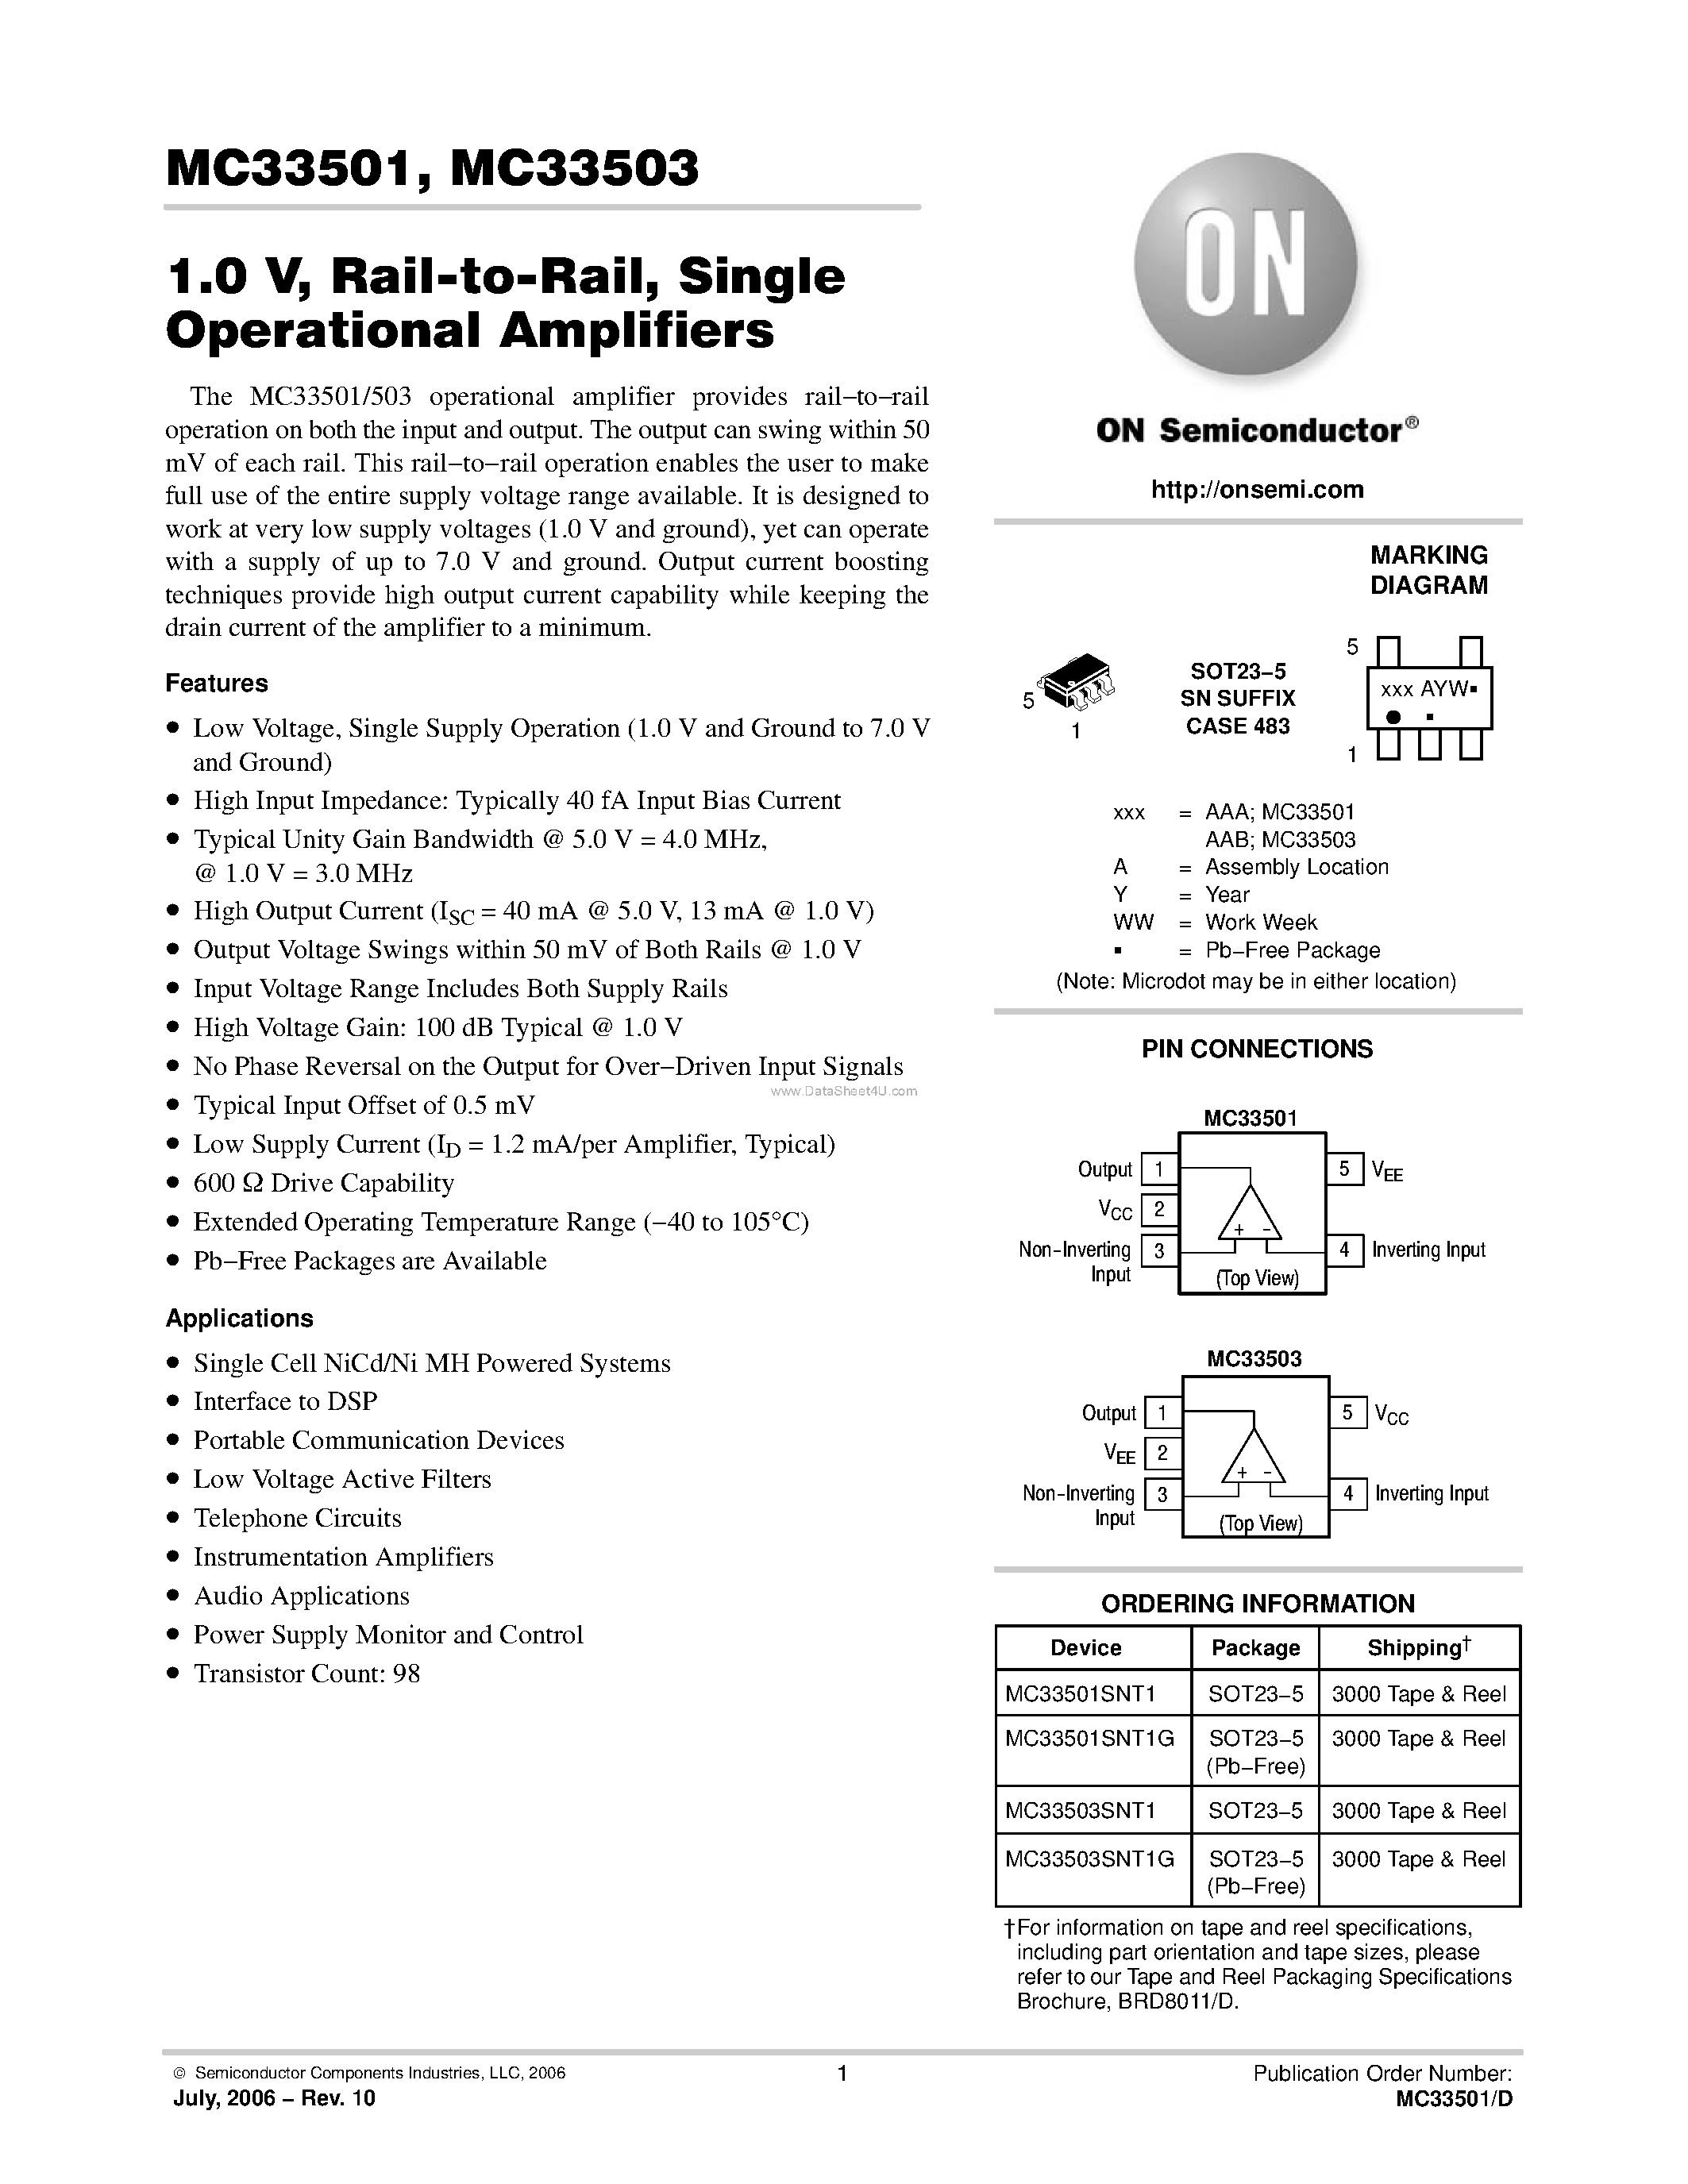 Datasheet MC33501 - (MC33501 / MC33503) Single Operational Amplifiers page 1